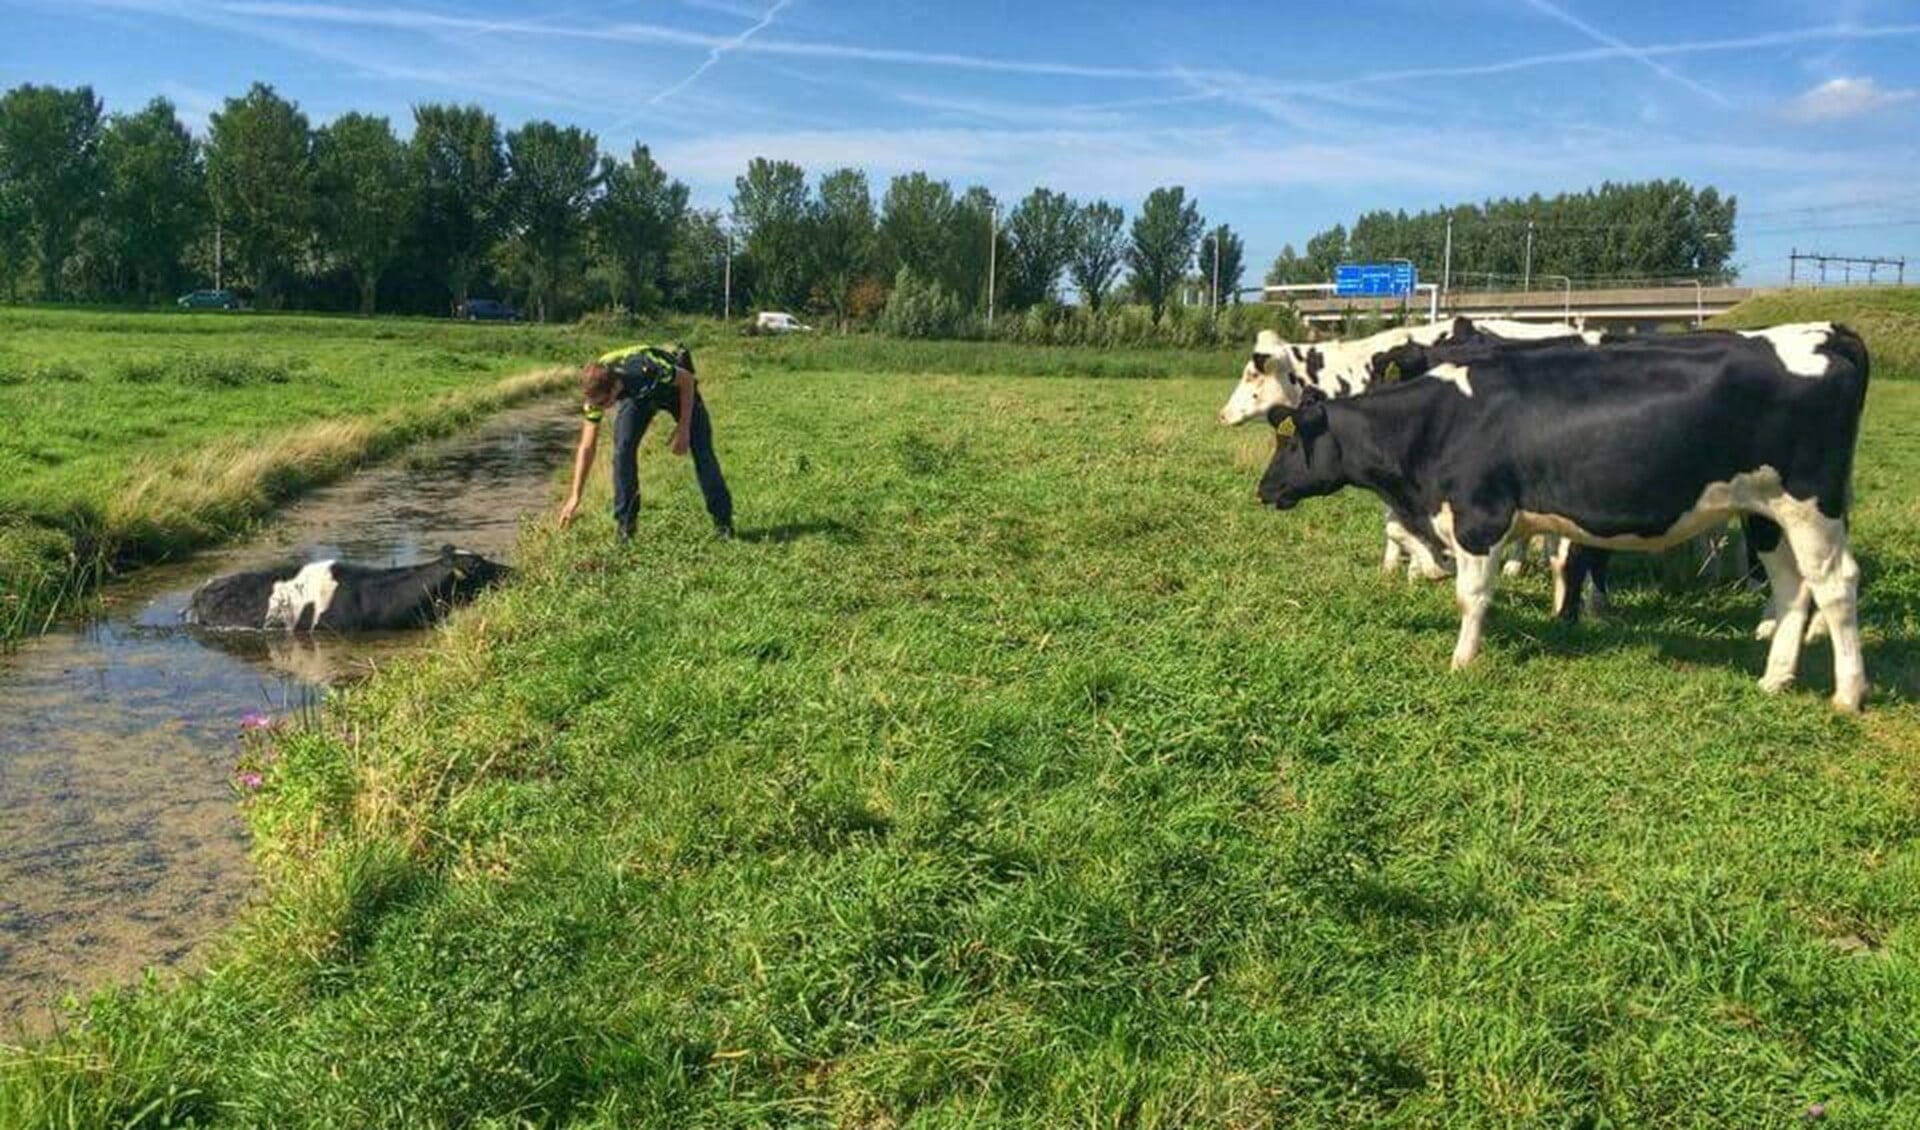 Agent helpt koe uit sloot onder toeziend oog van de andere koeien in de wei.